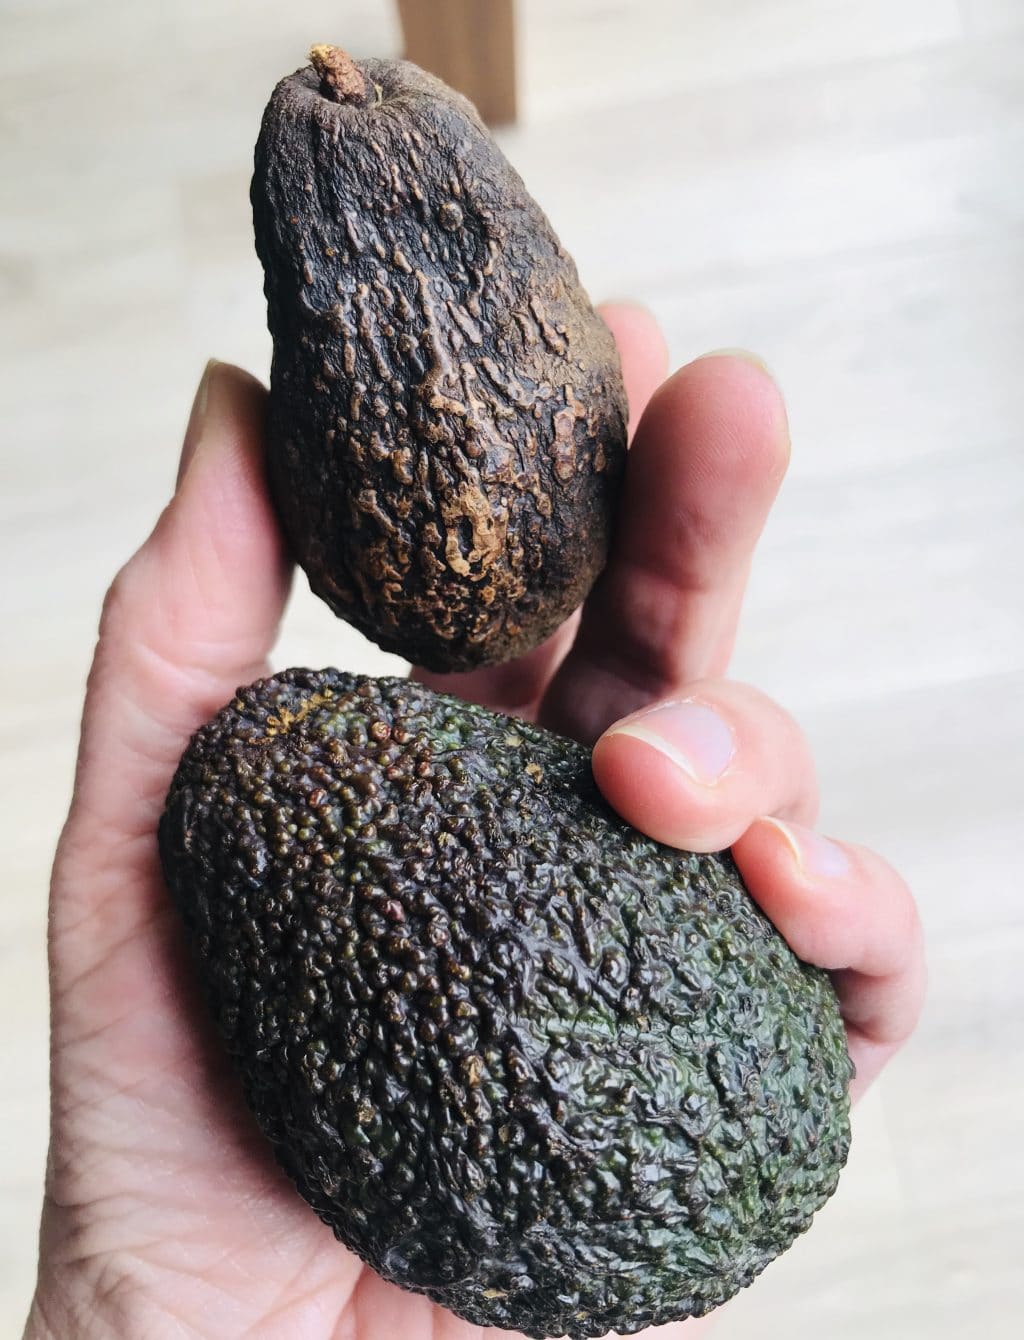 avocado rijp